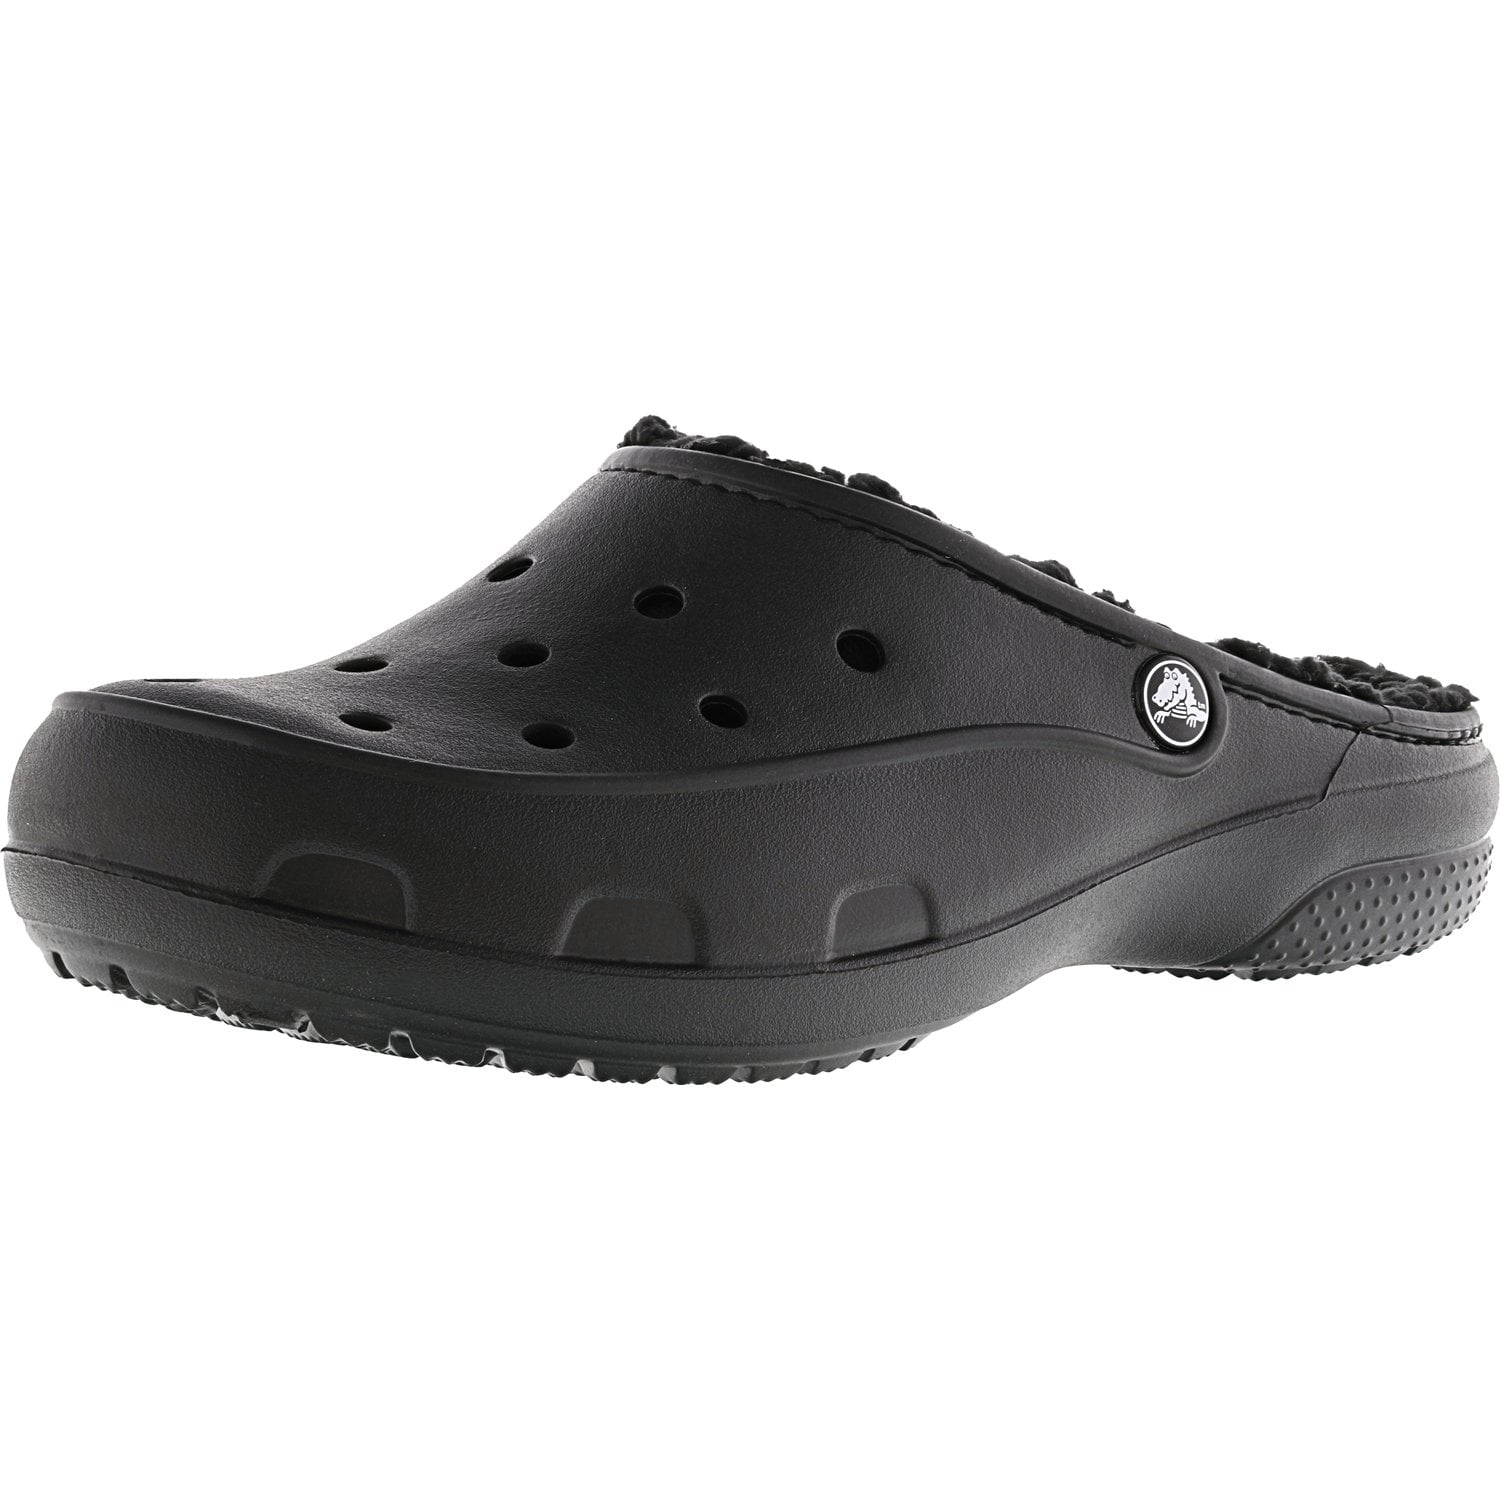 walmart crocs for women